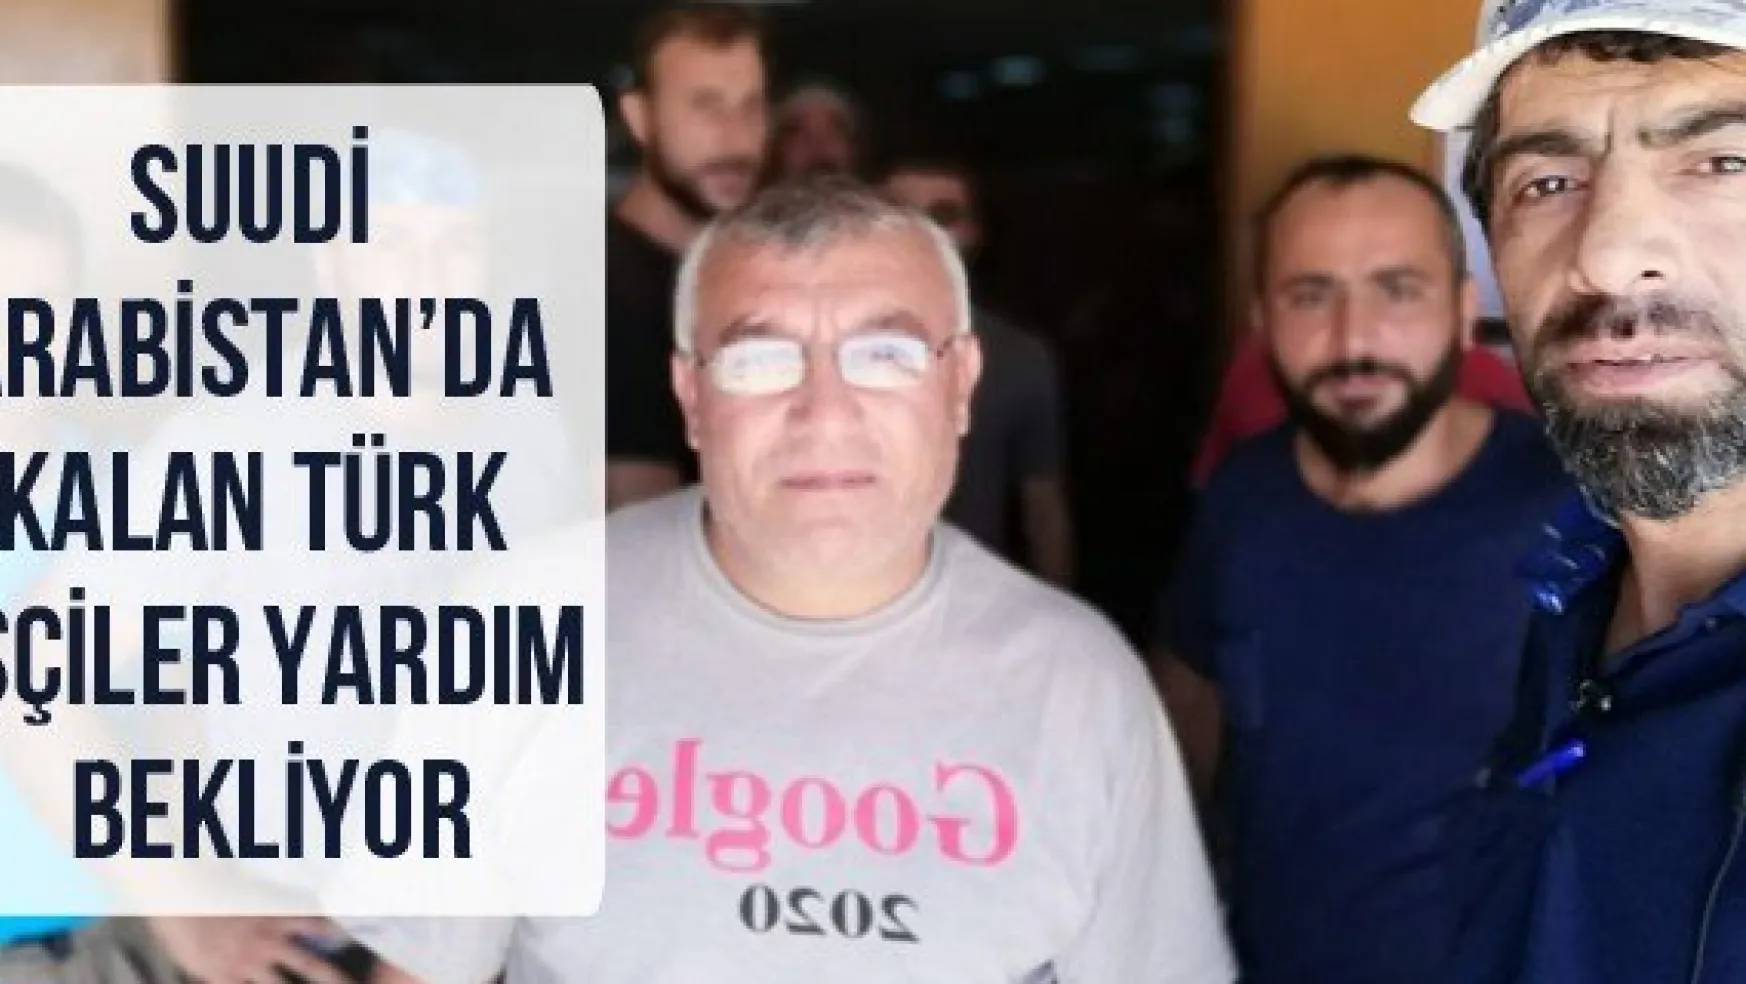 Suudi Arabistan'da kalan Türk işçiler yardım bekliyor